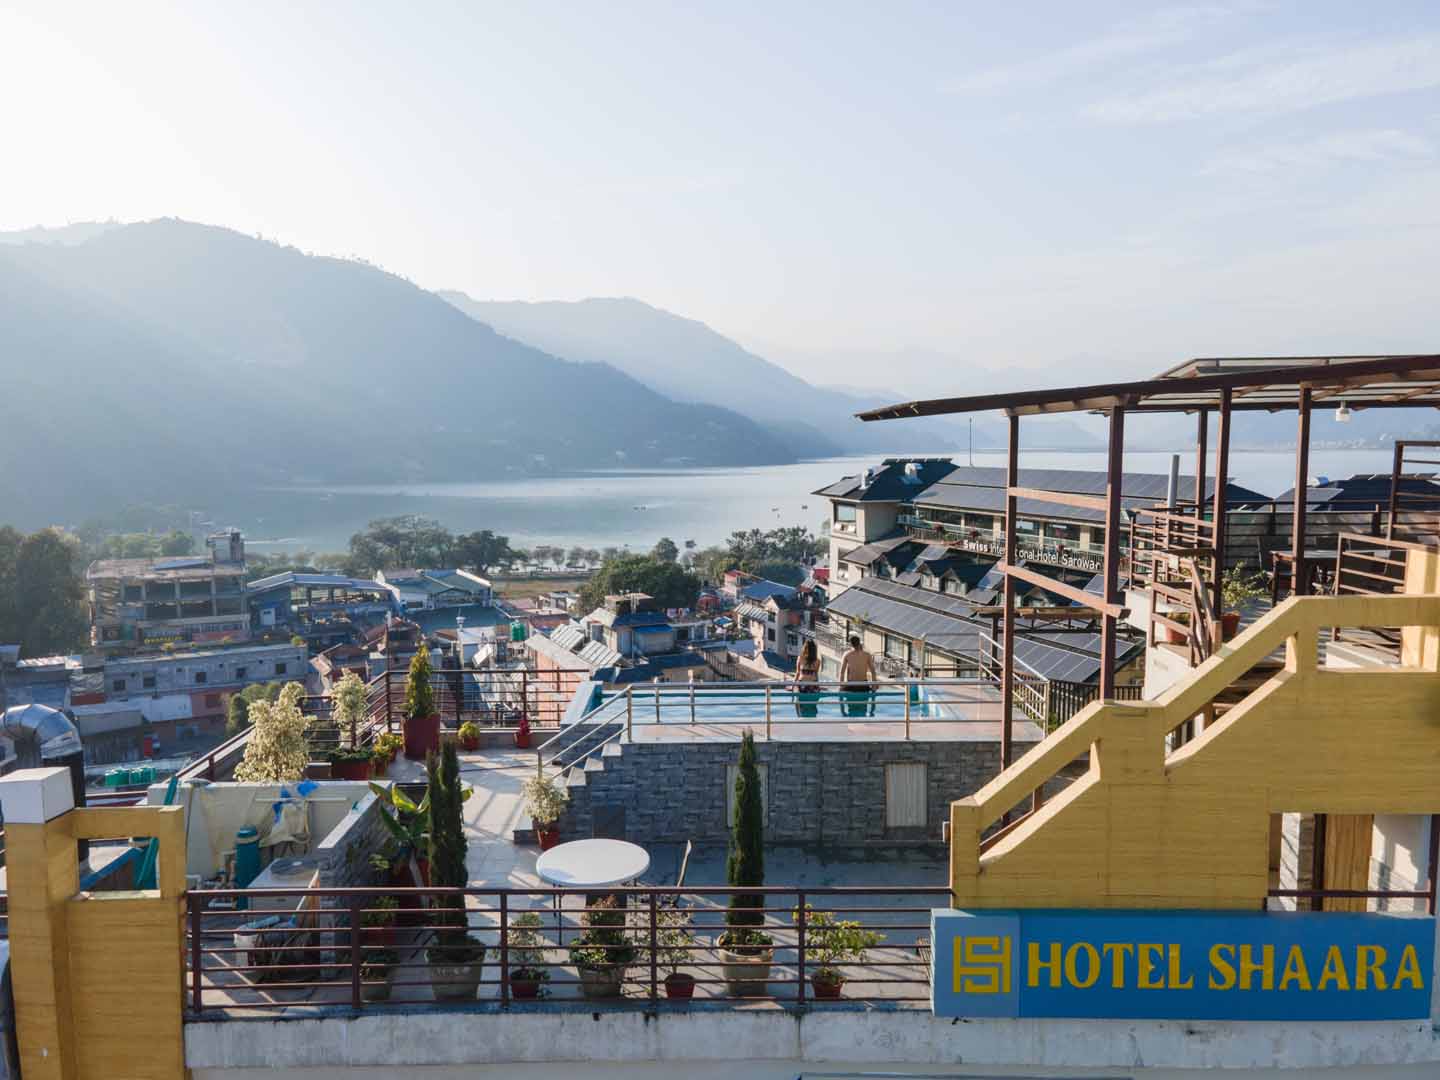 Hotel Shaara, Pokhara